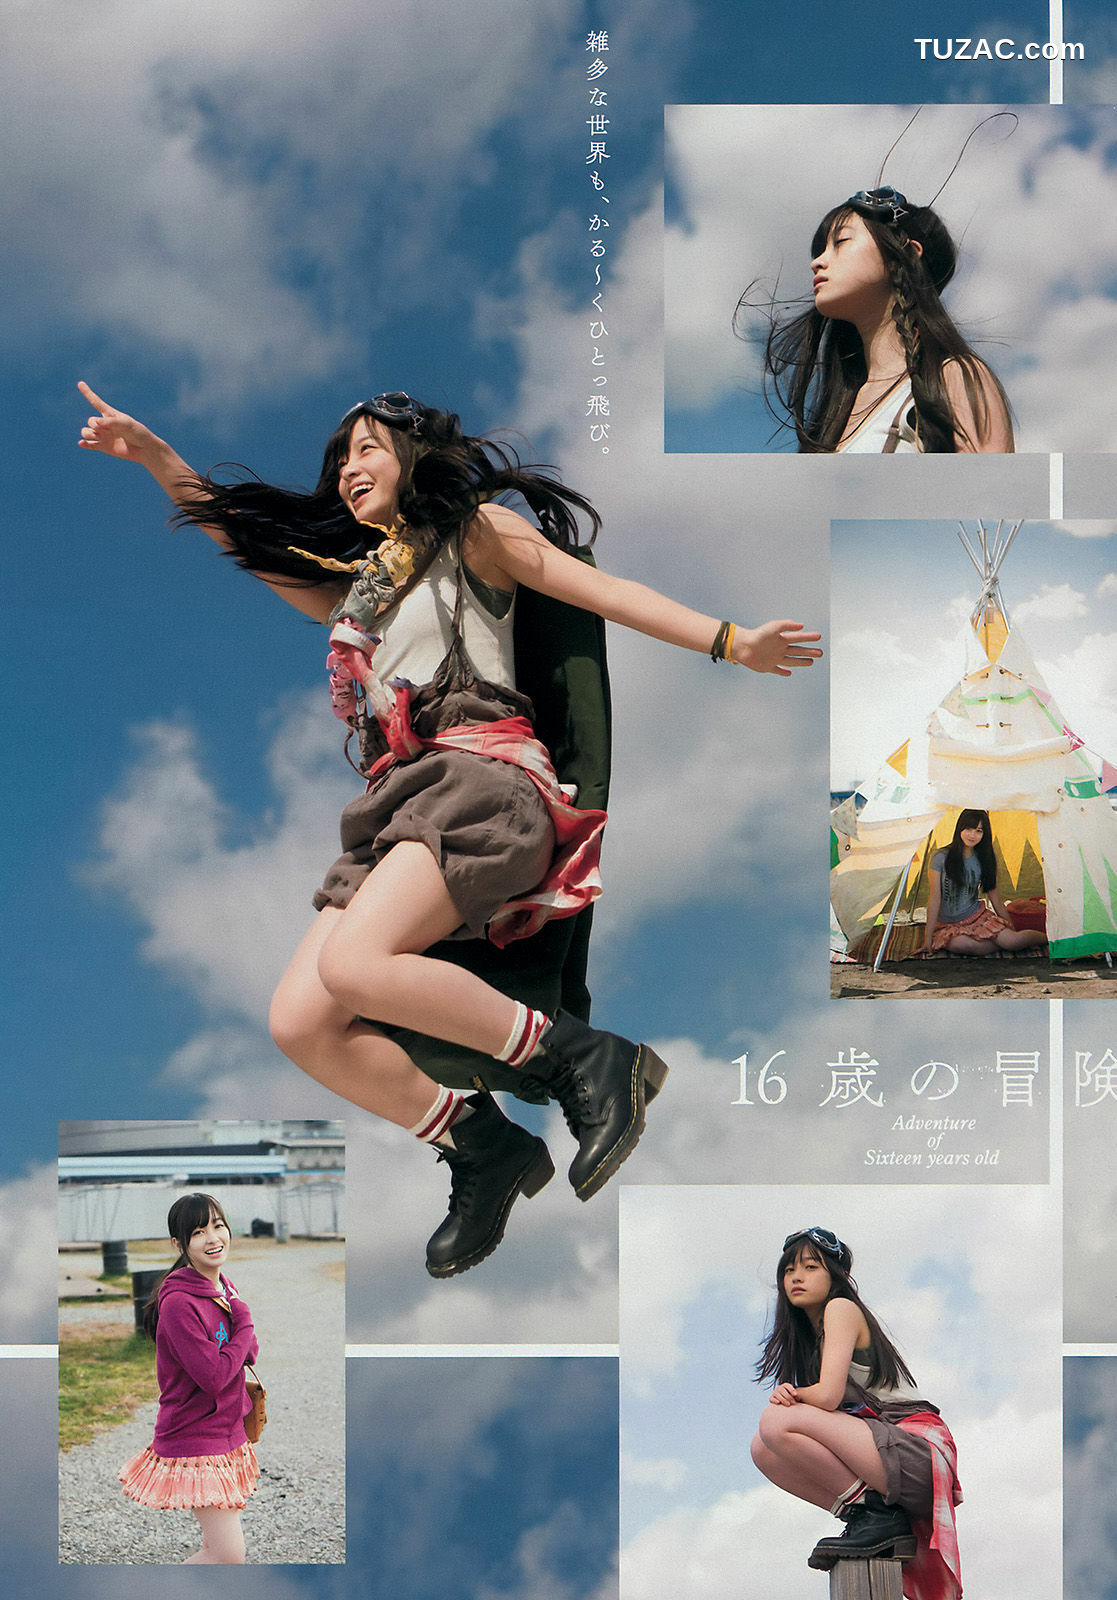 Young Magazine杂志写真_ 橋本環奈 上西星来 2015年No.17 写真杂志[11P]